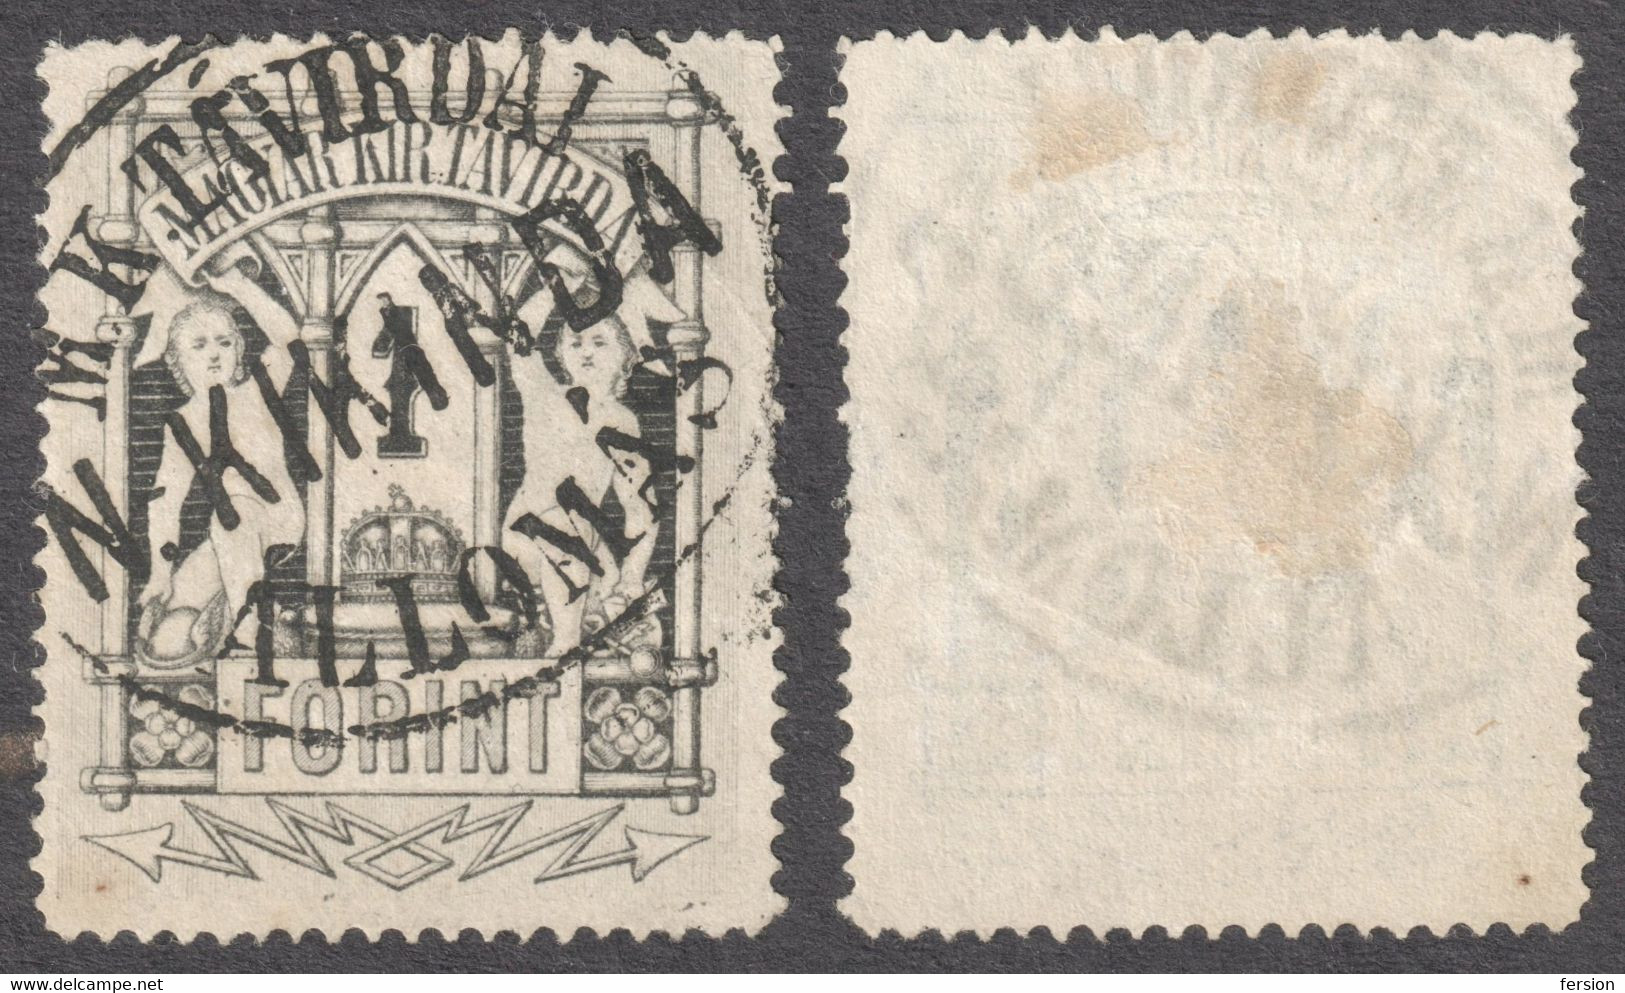 Kikinda Nagykikinda Postmark Serbia - TELEGRAPH Telegram TAX Stamp - 1873 HUNGARY - Copper Print 1 Ft - Used - Telegraaf